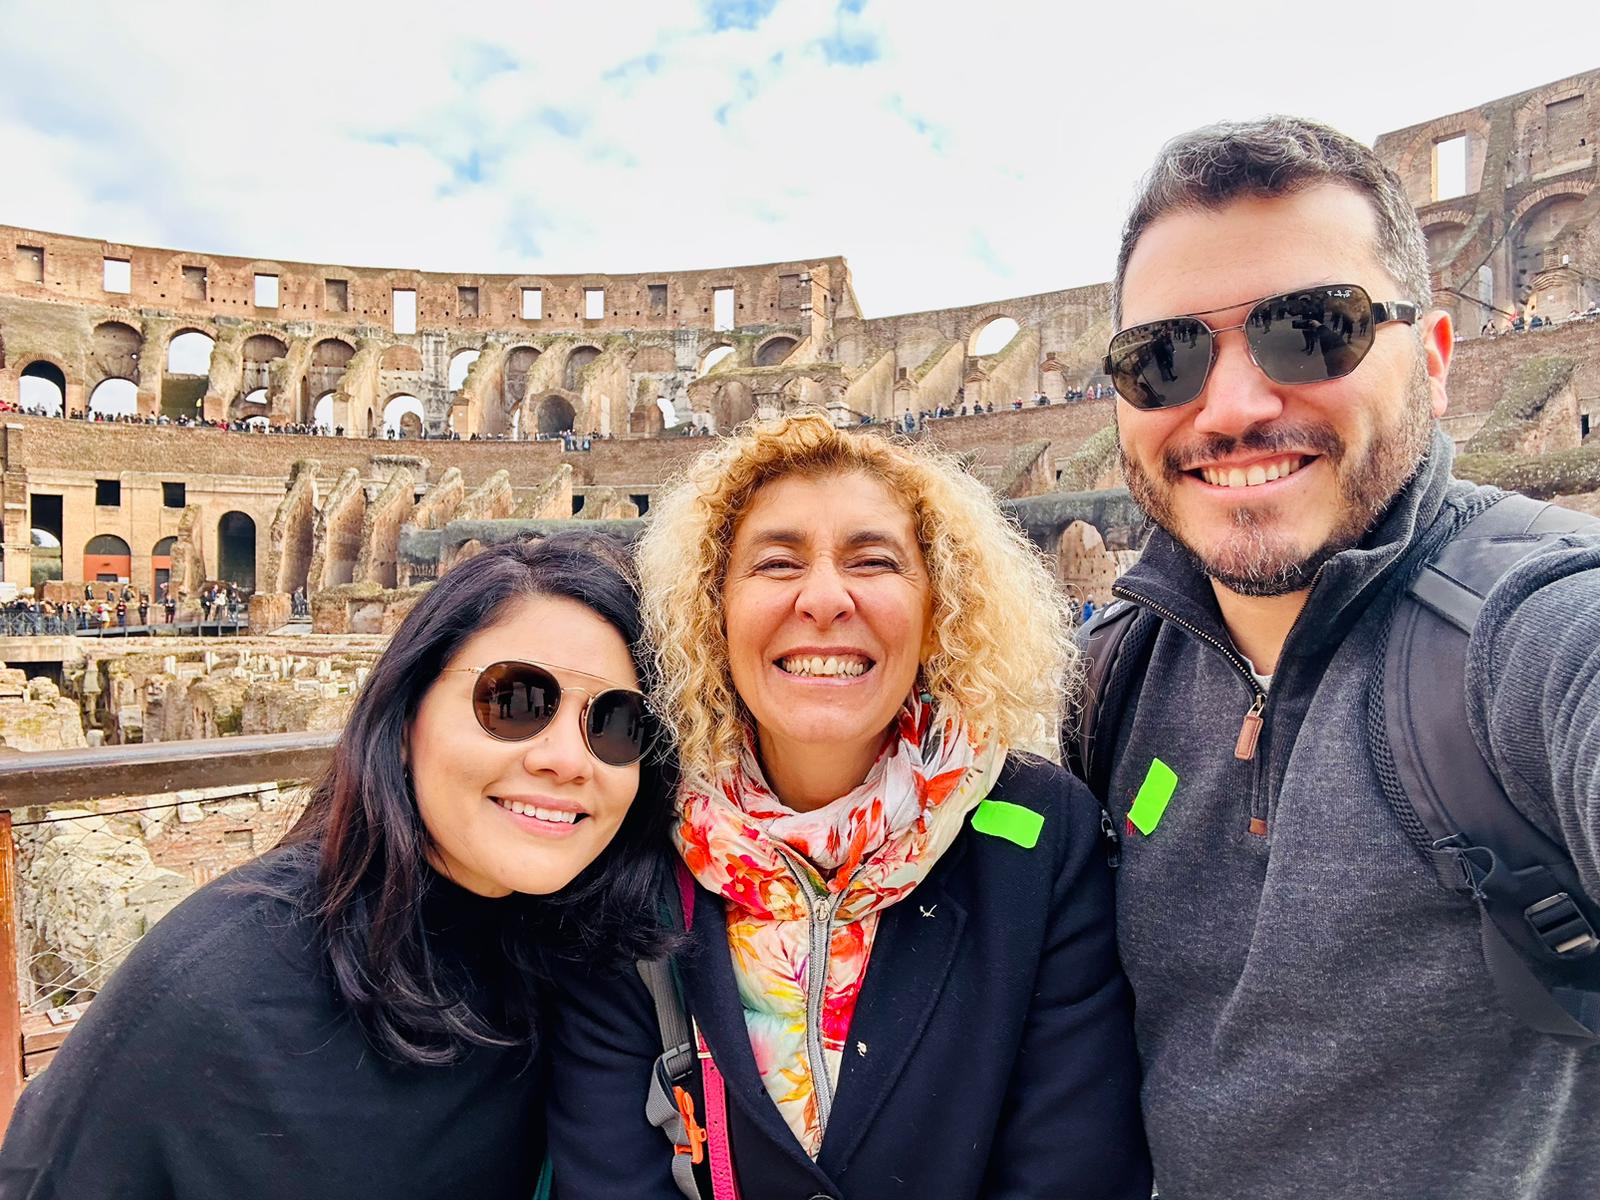 tour guide donatella with couple in colosseum arena